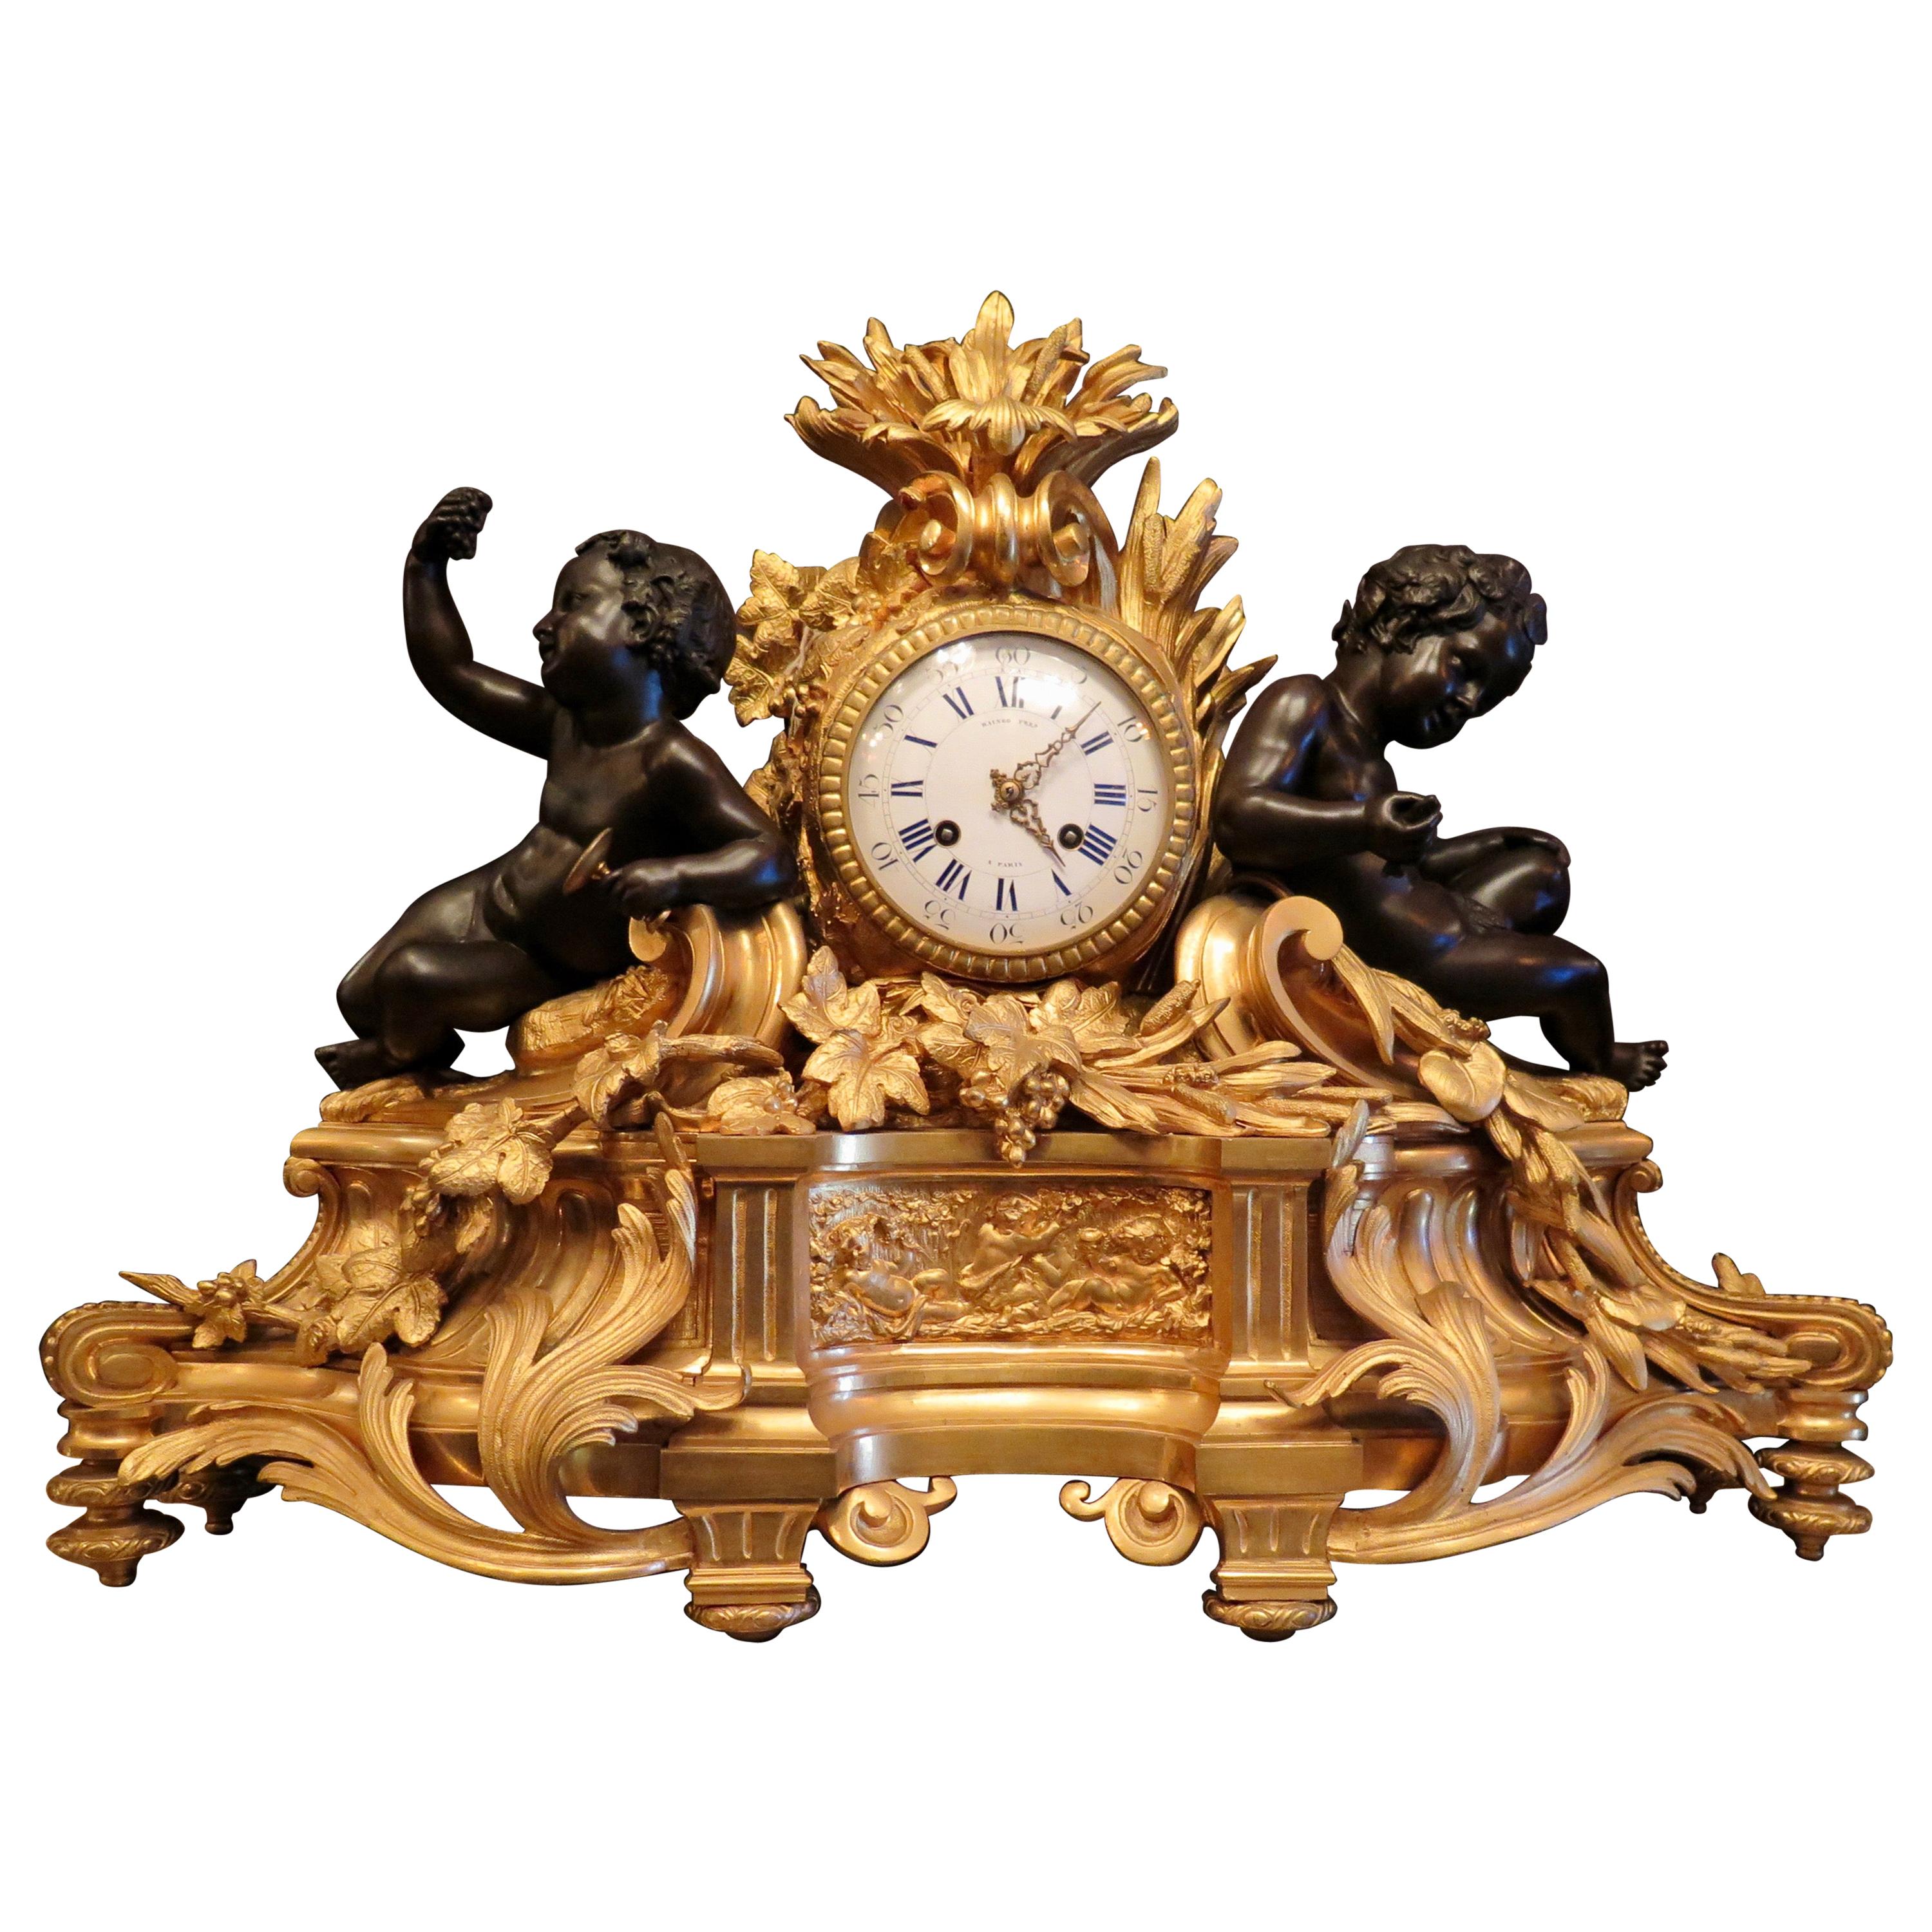 Cette horloge de garniture française vintage du milieu du 19e siècle, composée de 3 pièces, est merveilleusement conçue dans le style Louis XVI. L'ensemble surdimensionné comprend une horloge exceptionnelle en bronze doré accentuée par des figures